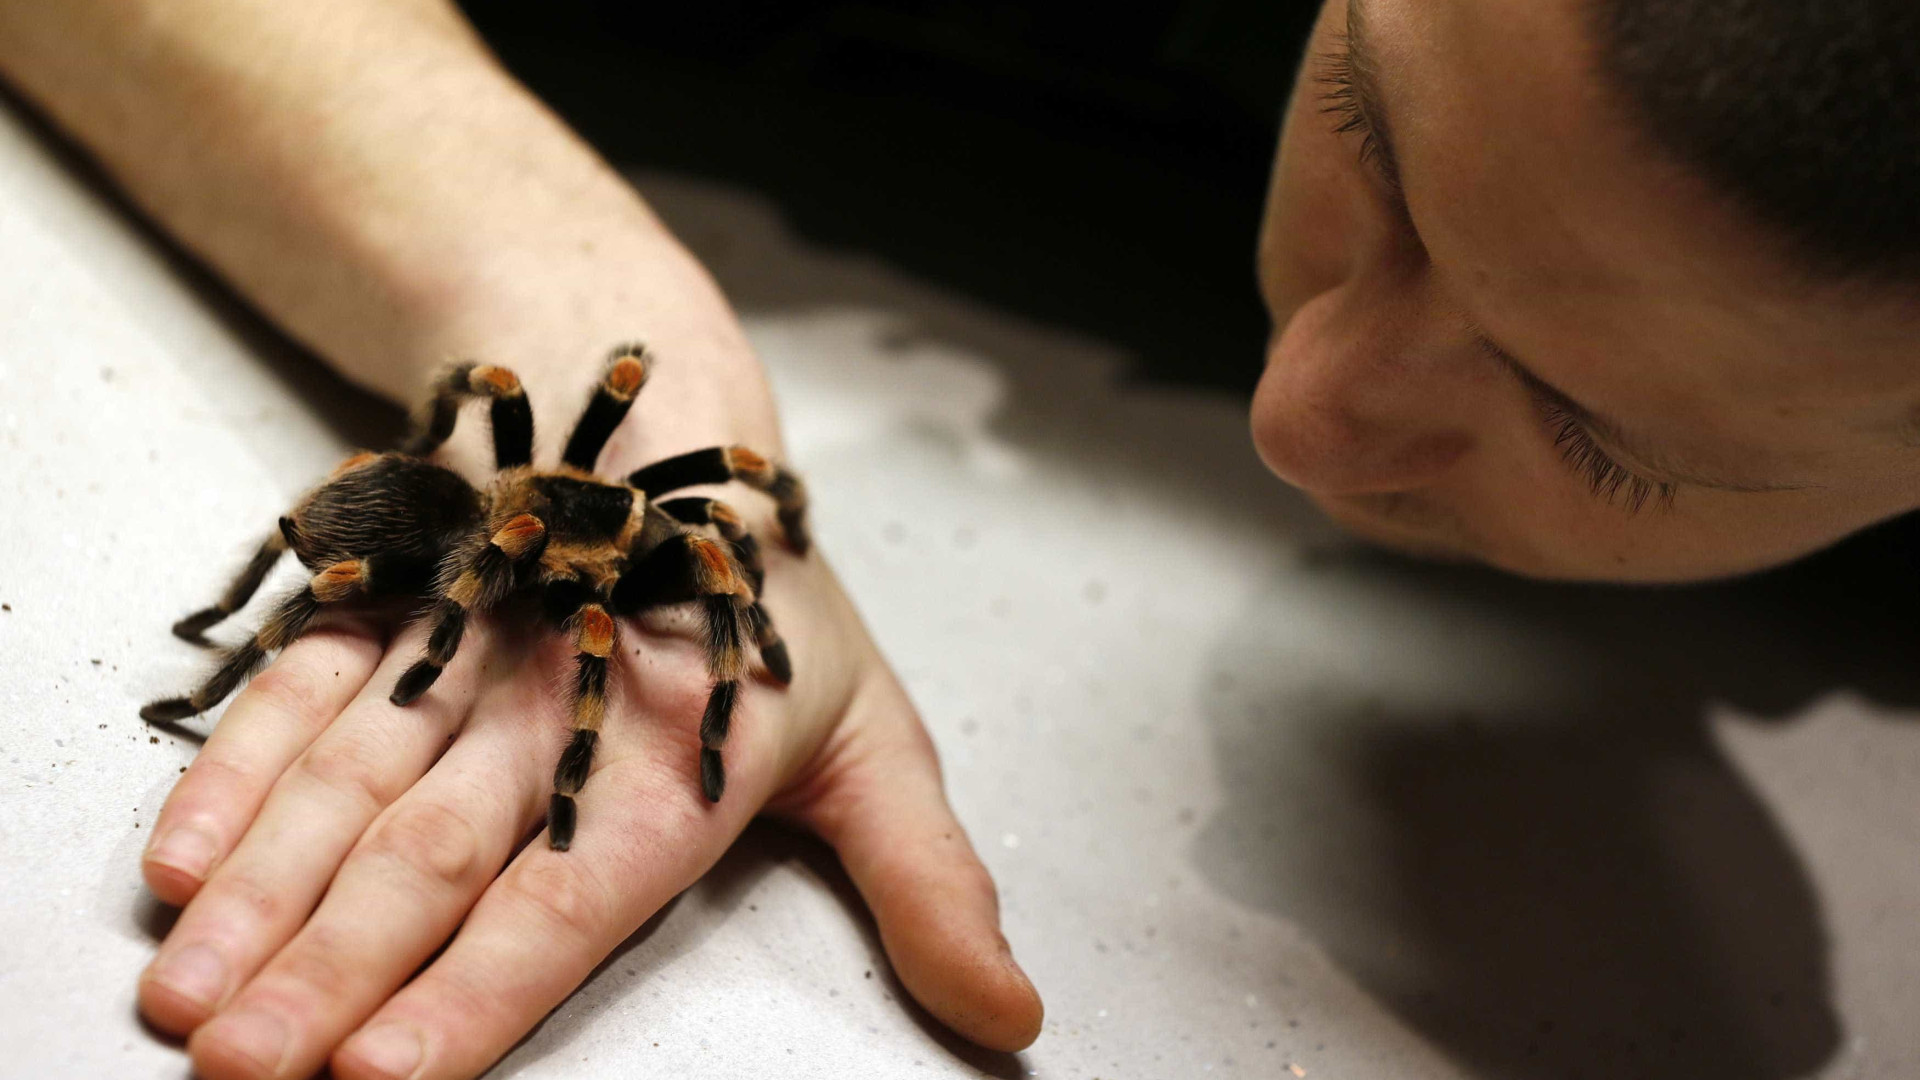 Cientistas estimam que aranhas podem
comer habitantes do planeta